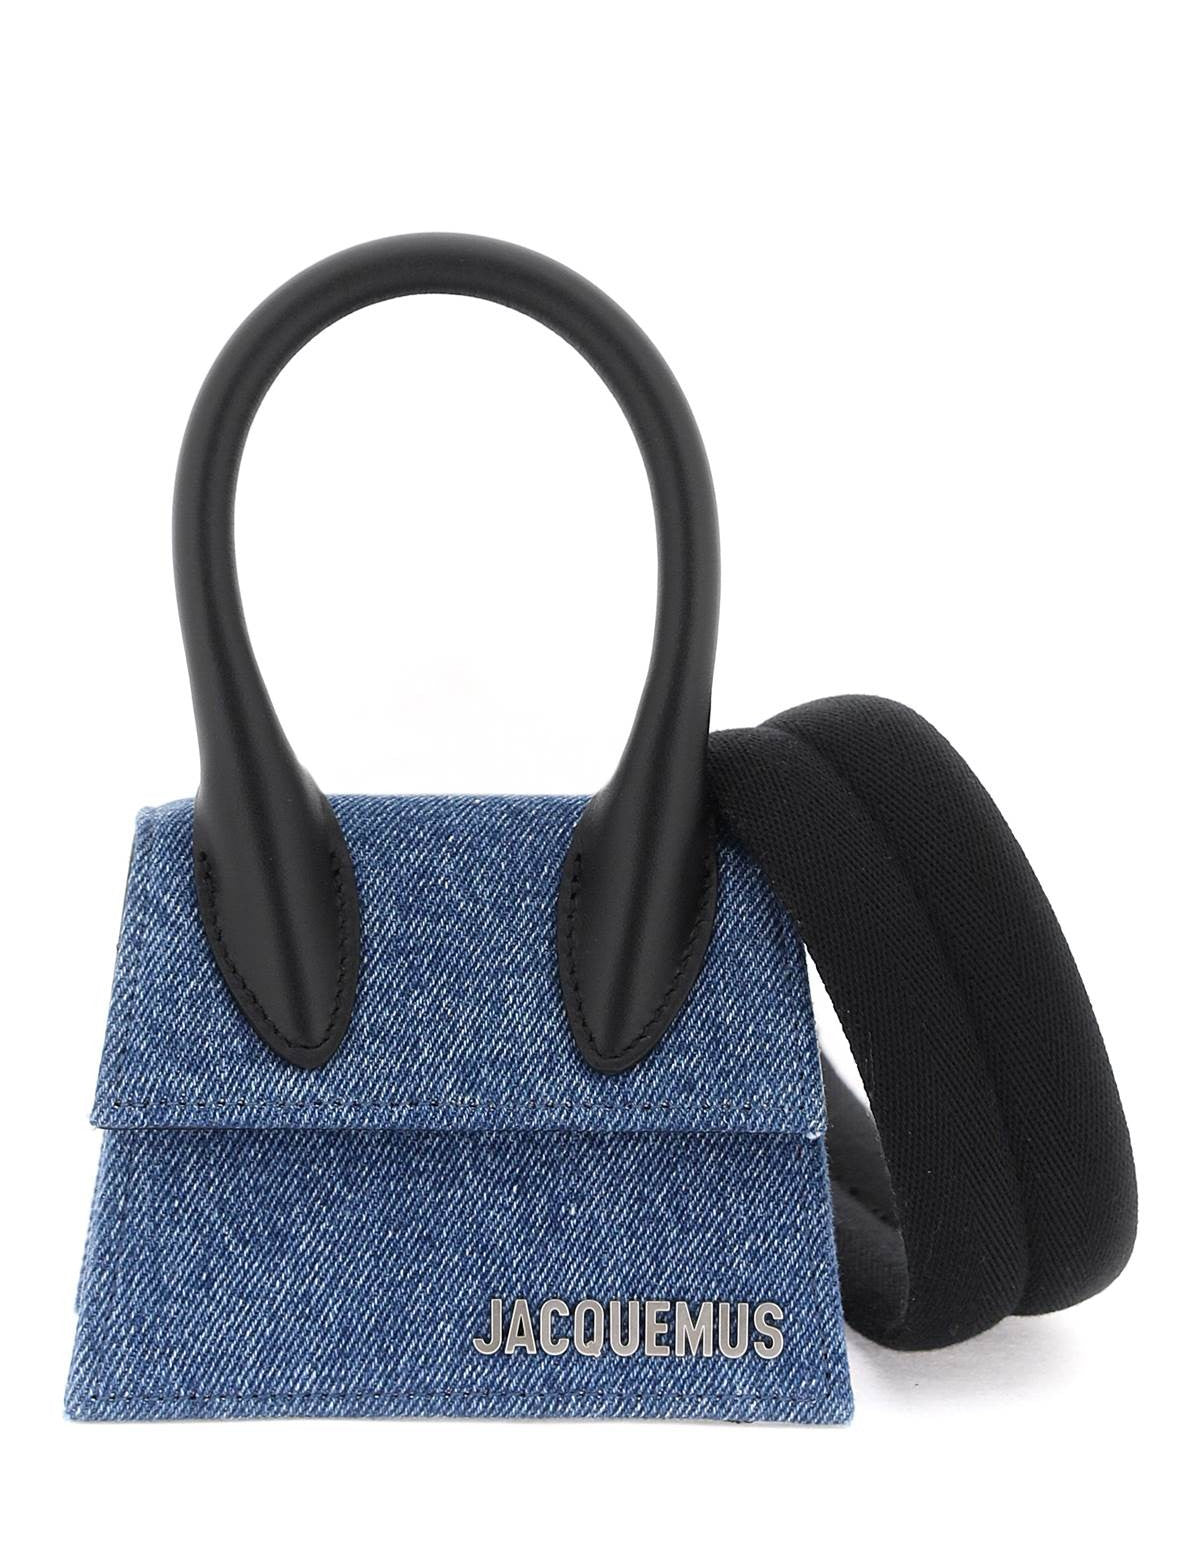 jacquemus-le-chiquito-mini-bag_6abb168d-10ad-43ac-93a3-2fd05d72fb39.jpg